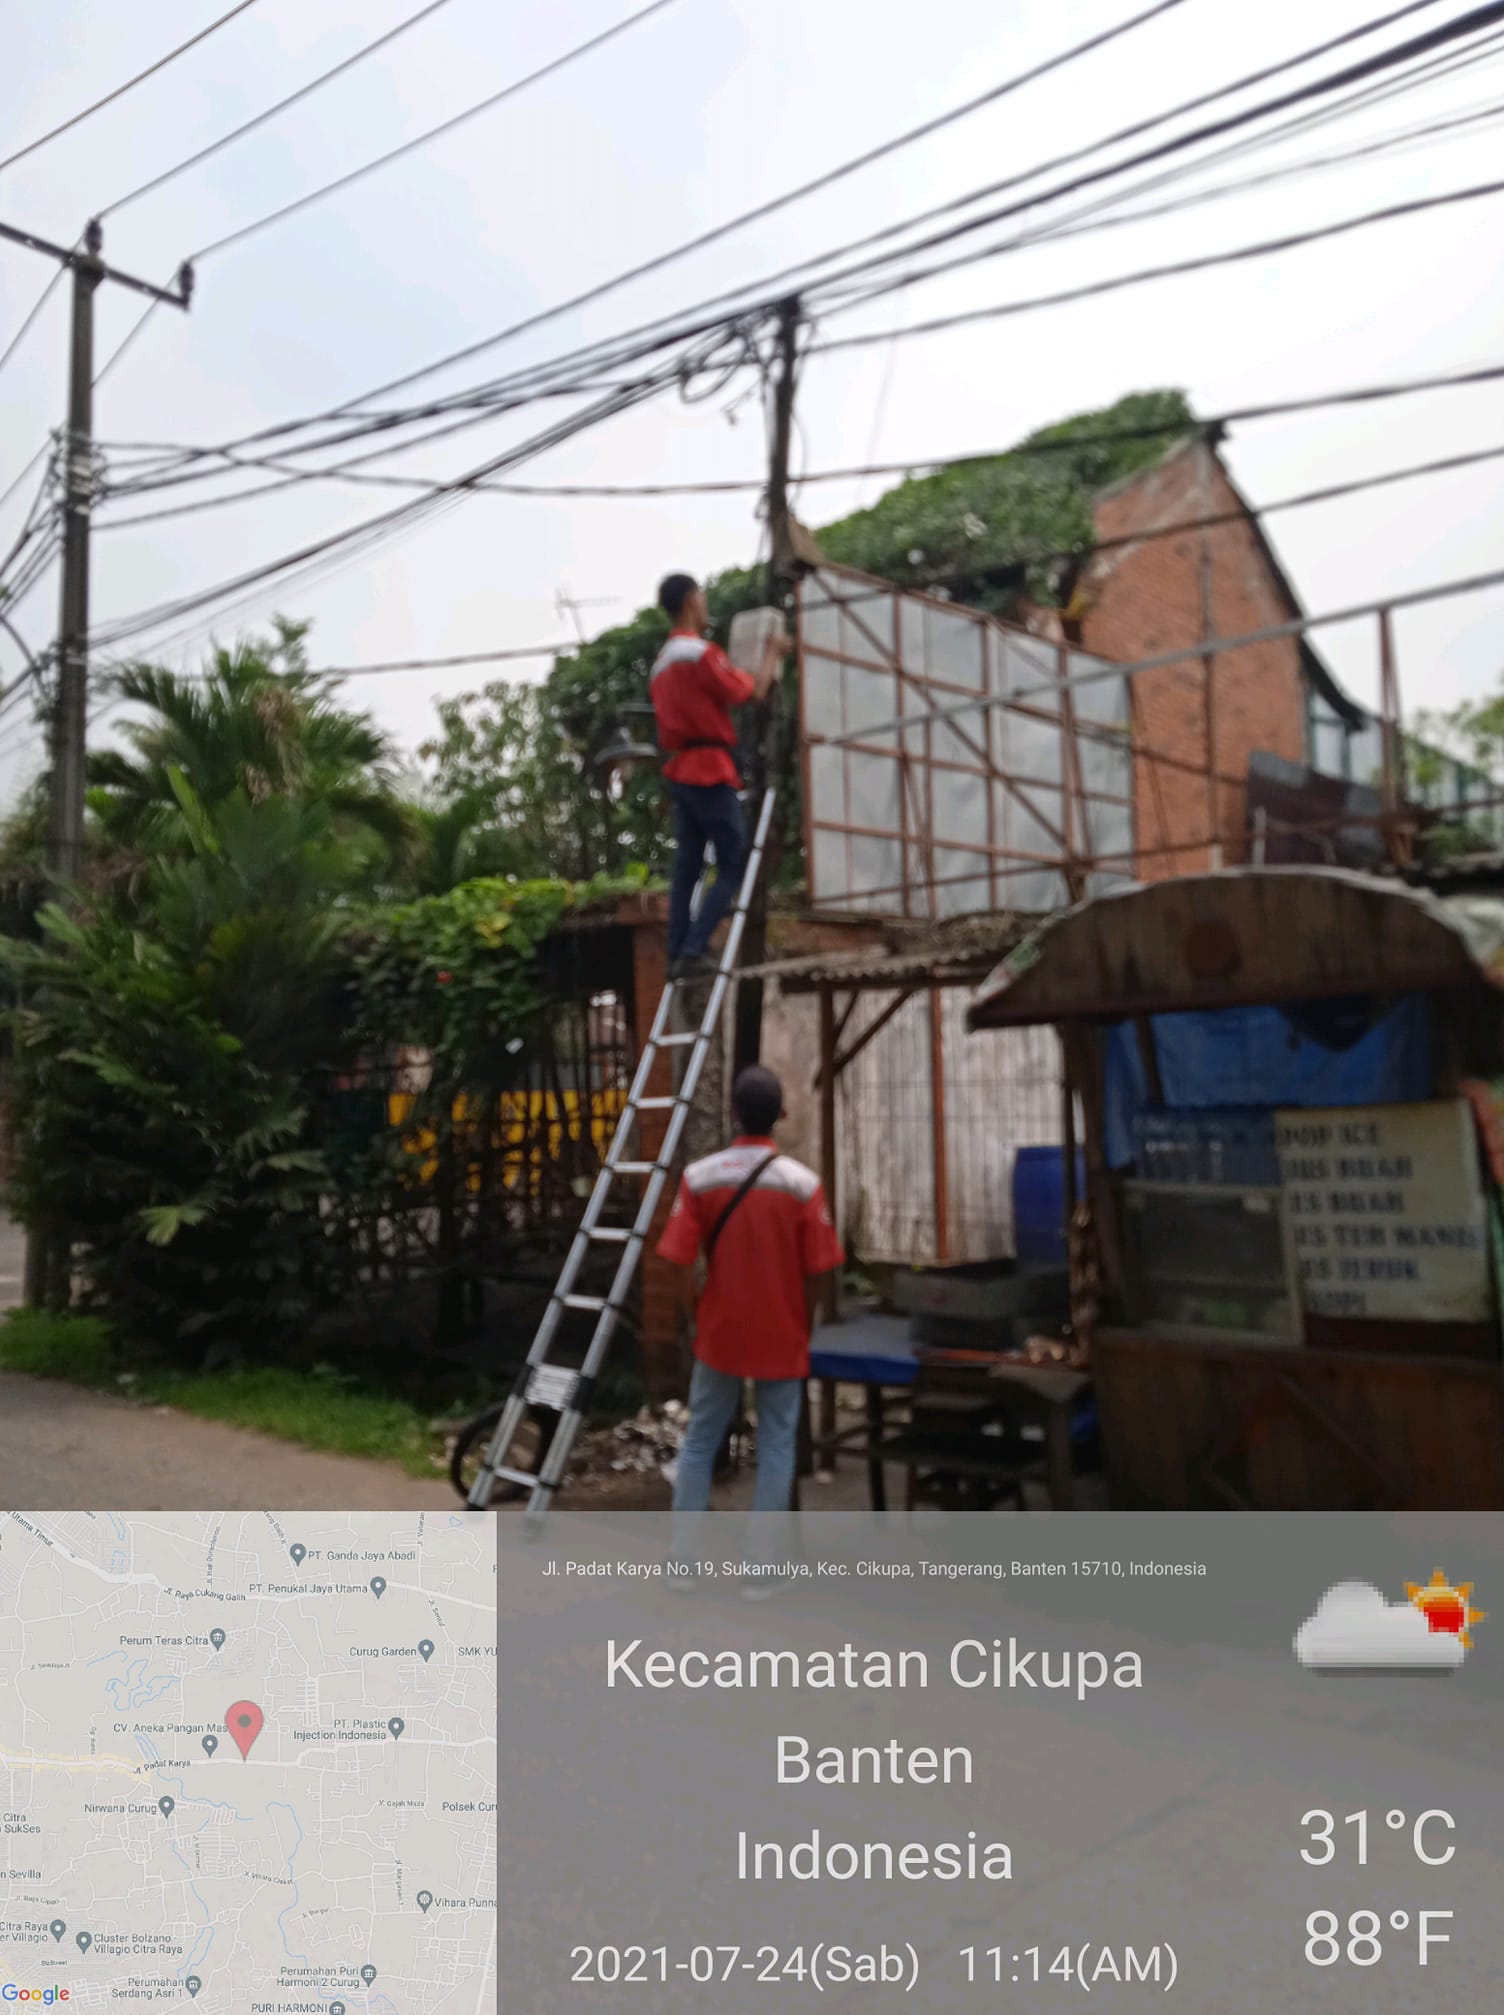 Harga Pasang Wifi Telkom Banding Bringin Semarang